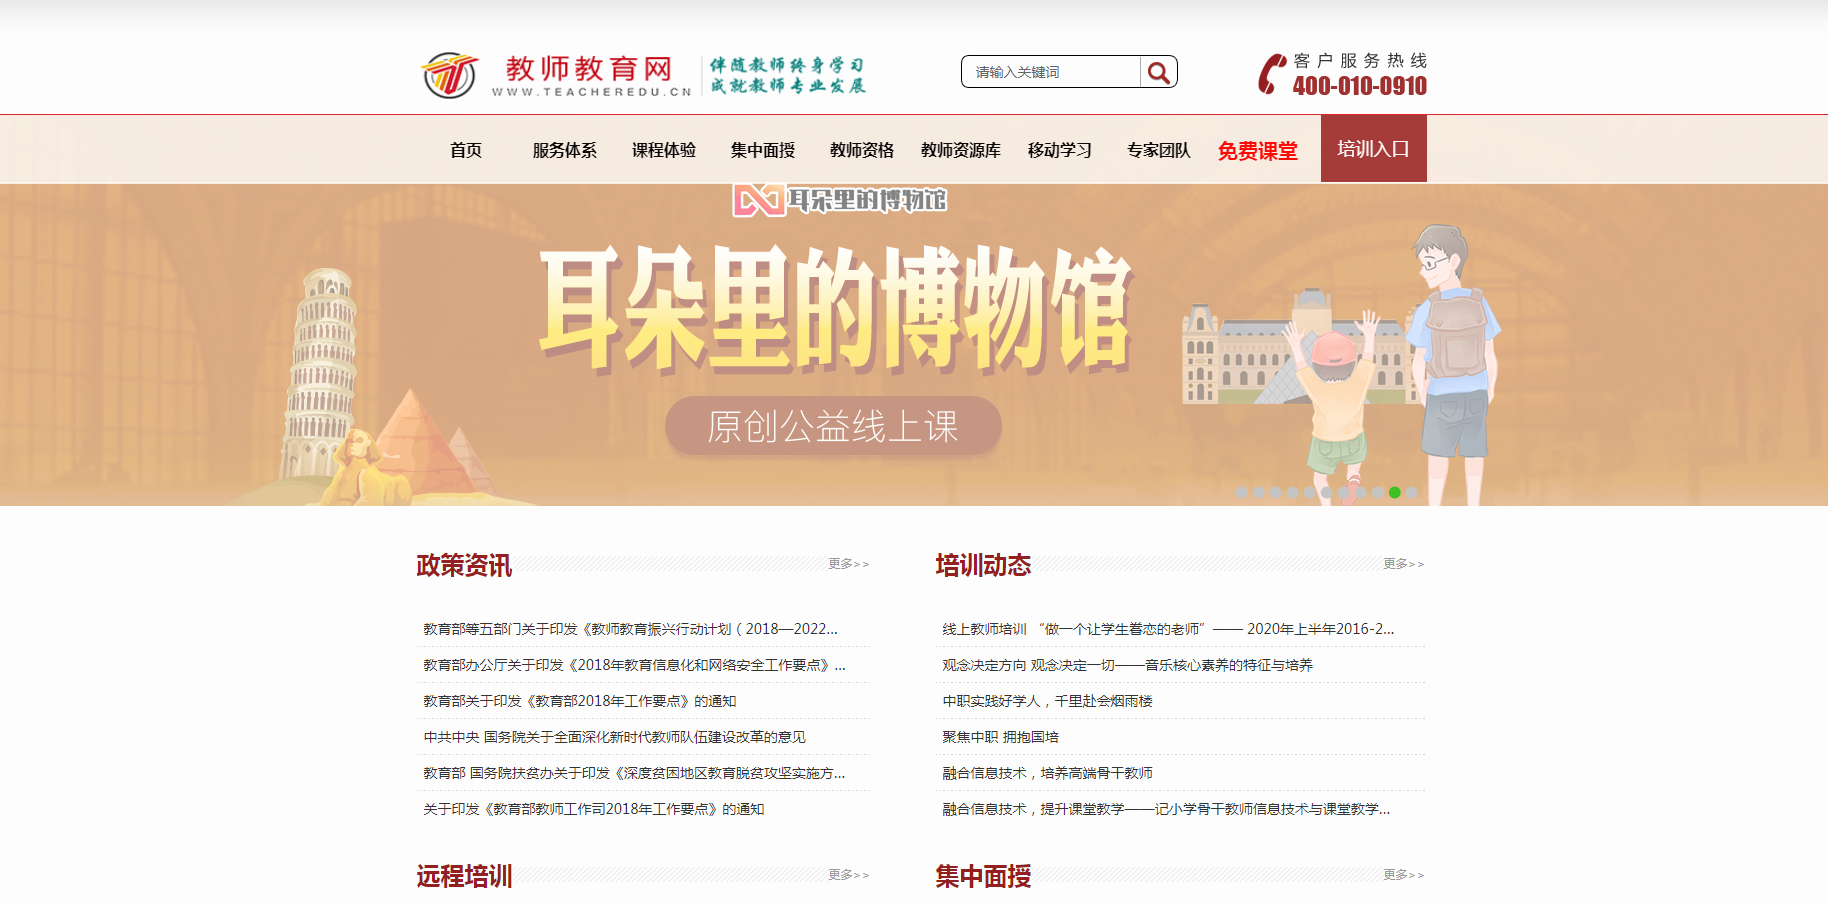 www.teacheredu.cn：教师教育网首页